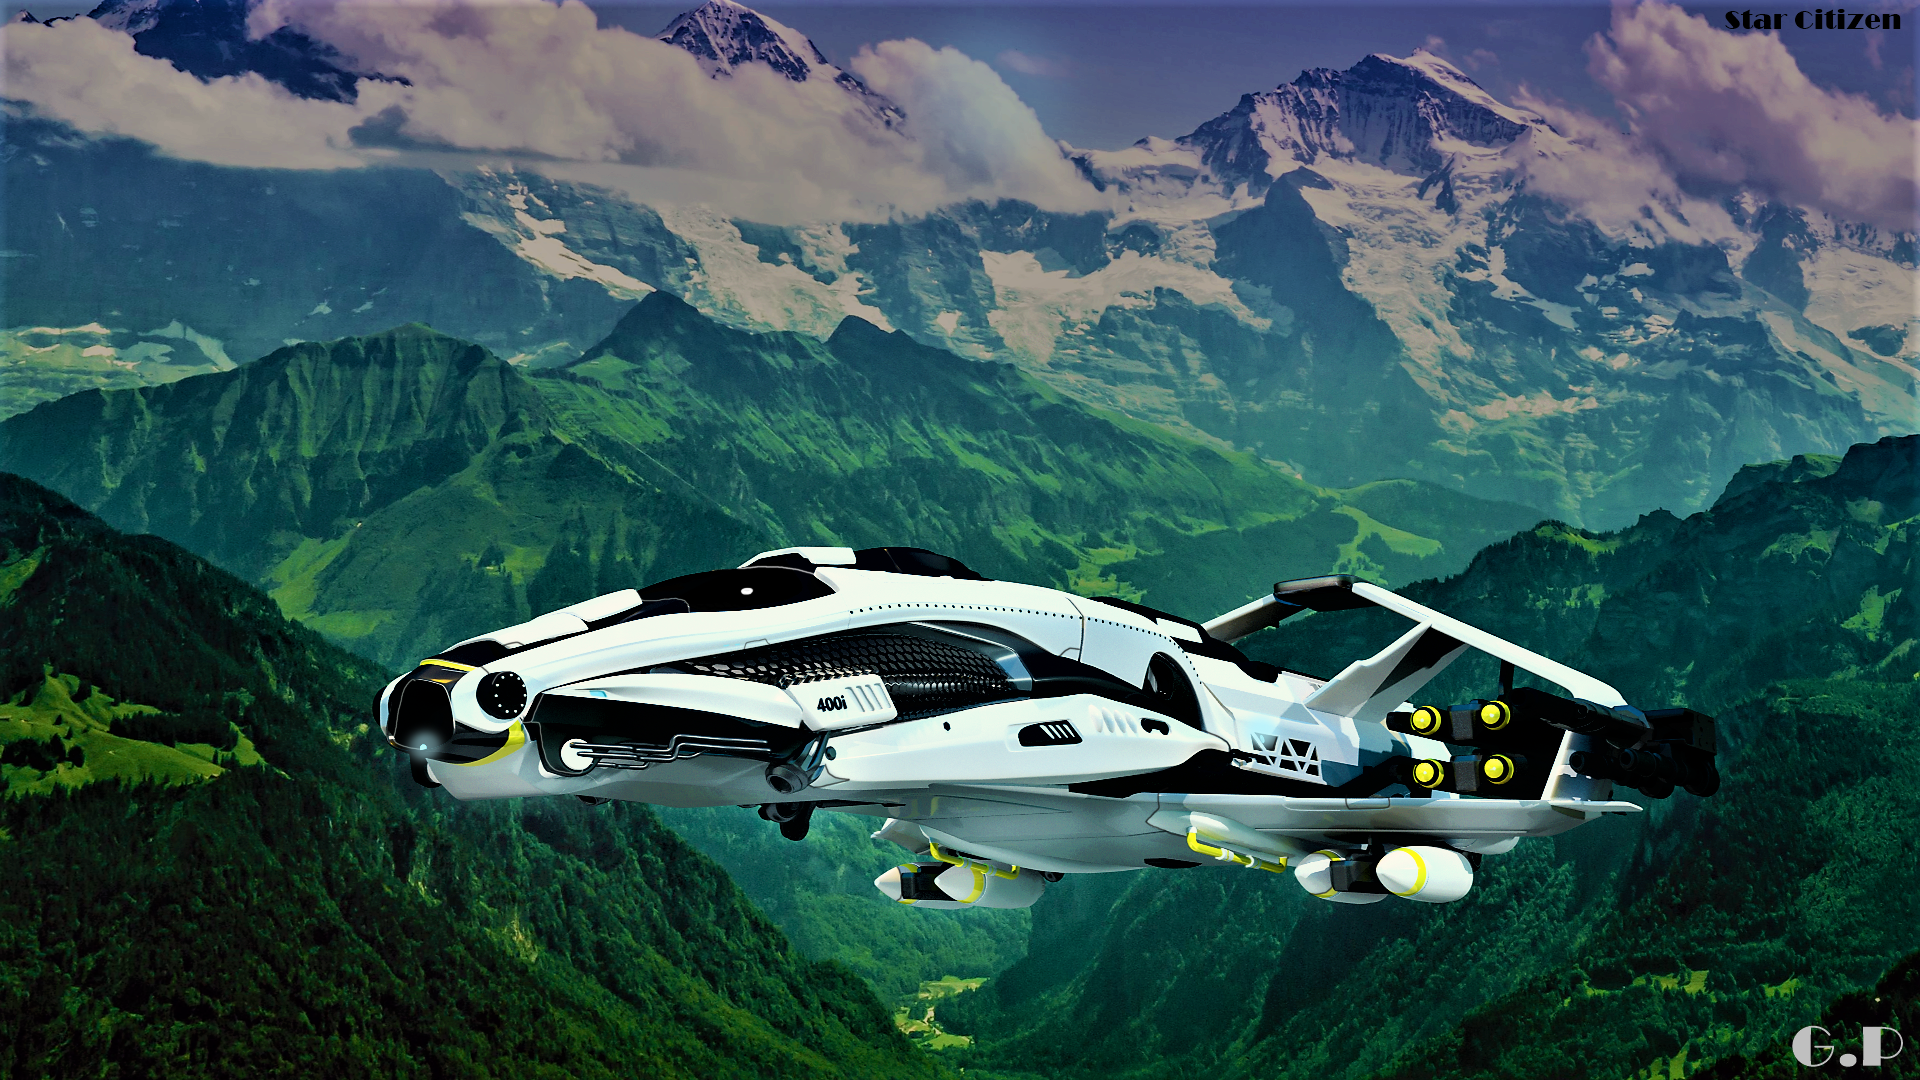 400i Spacecraft by GabrieliusGP on DeviantArt